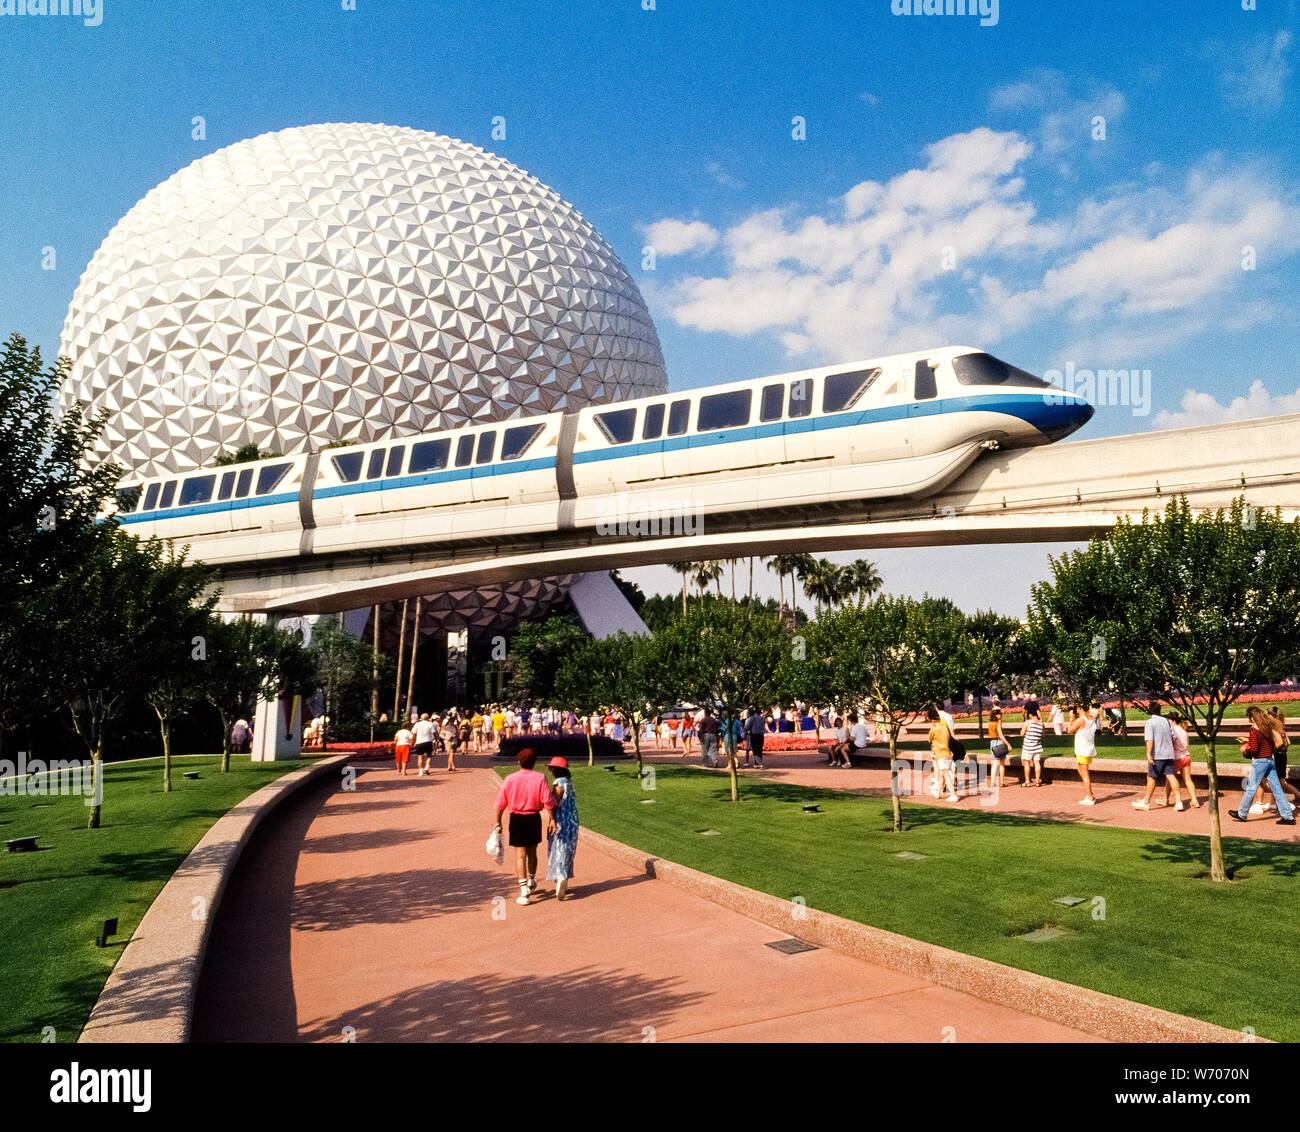 Ein Walt Disney World Monorail Bahn gleitet über den Besuchern zu einem riesigen geodätische Kugel namens Raumschiff Erde, dass ist das Symbol von Epcot, einer von vier Themenparks innerhalb der Welt-berühmten Disney Freizeitpark in der Nähe von Orlando in Florida, USA. Epcot ist die Abkürzung für experimentellen Prototyp Gemeinschaft von morgen und war ursprünglich geplant, eine utopische Stadt zu sein. Es hat jedoch in zwei thematische Bereiche: Welt der Zukunft, die Wissenschaft und Technologie und World Showcase mit dem Lebensstil von 11 verschiedenen Ländern entwickelt. Seit der Eröffnung im Jahr 1971, Disney World hat eine amerikanische Ikone geworden. Stockfoto